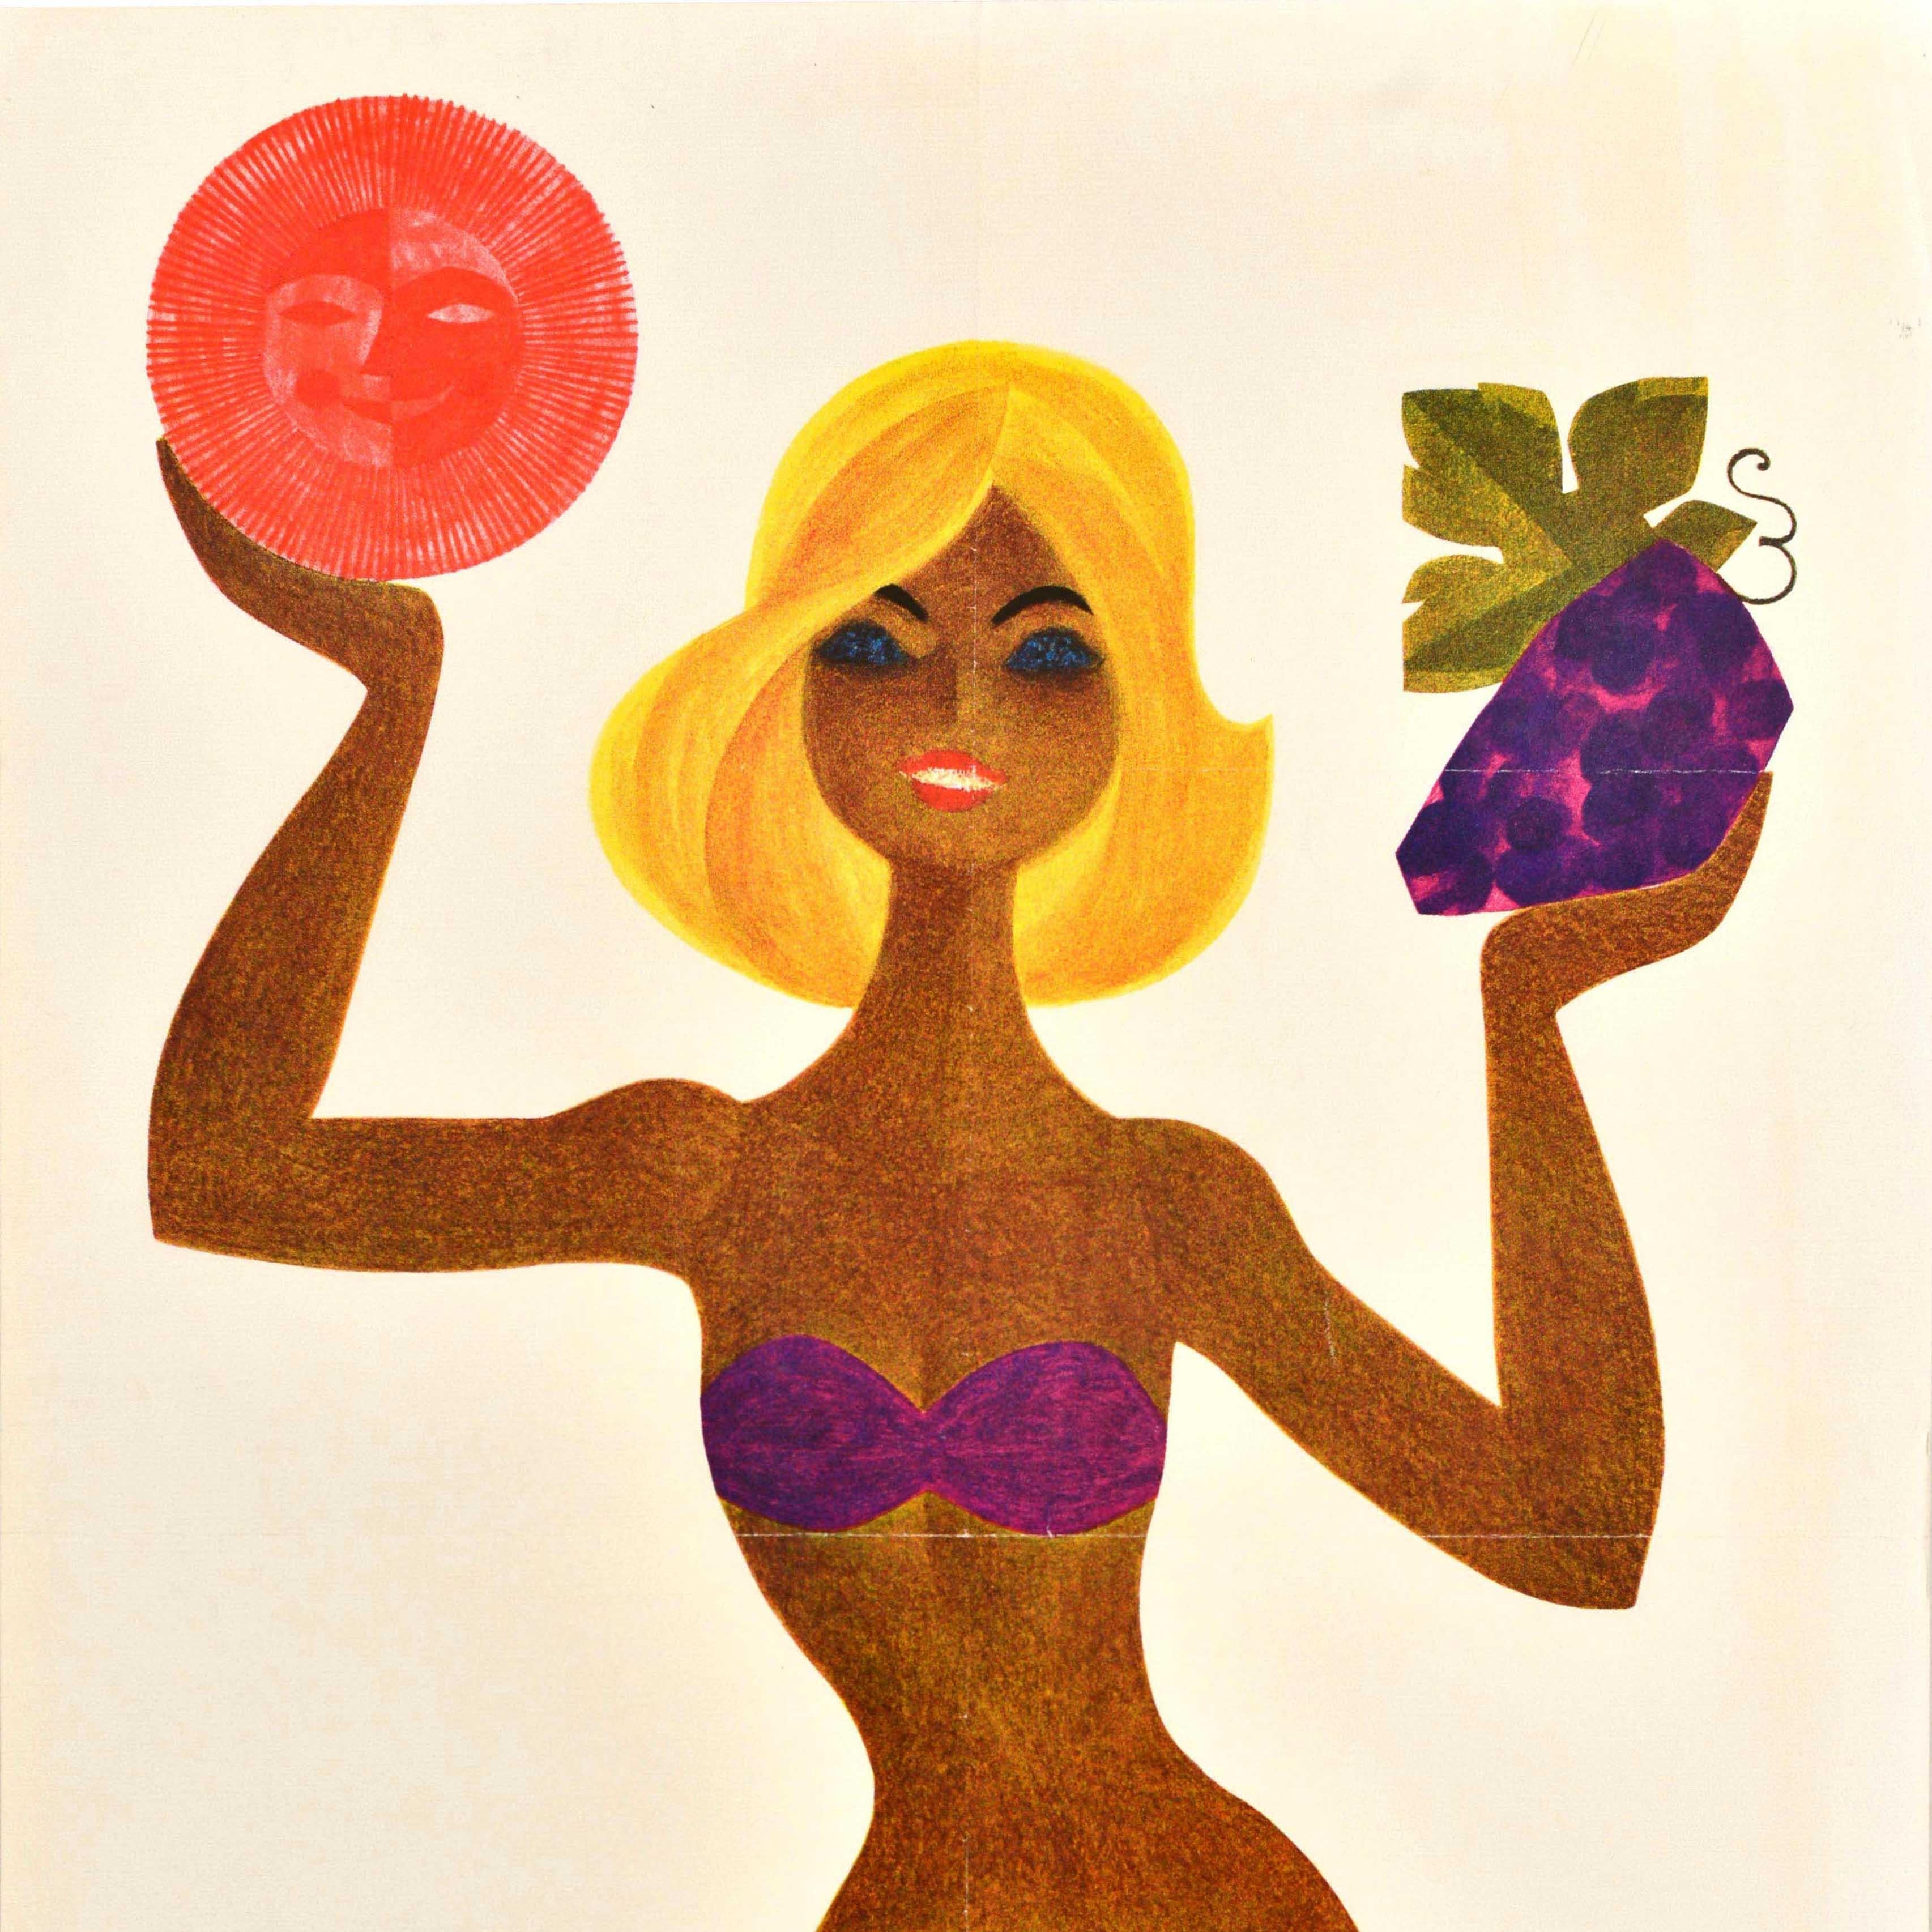 Original-Reiseplakat des sowjetischen Reisebüros Intourist mit dem großartigen Bild einer sonnengebräunten Dame im Bikini, die in der einen Hand eine lächelnde Sonne und in der anderen eine Weintraube hält, während im Vordergrund ein Fisch im klaren